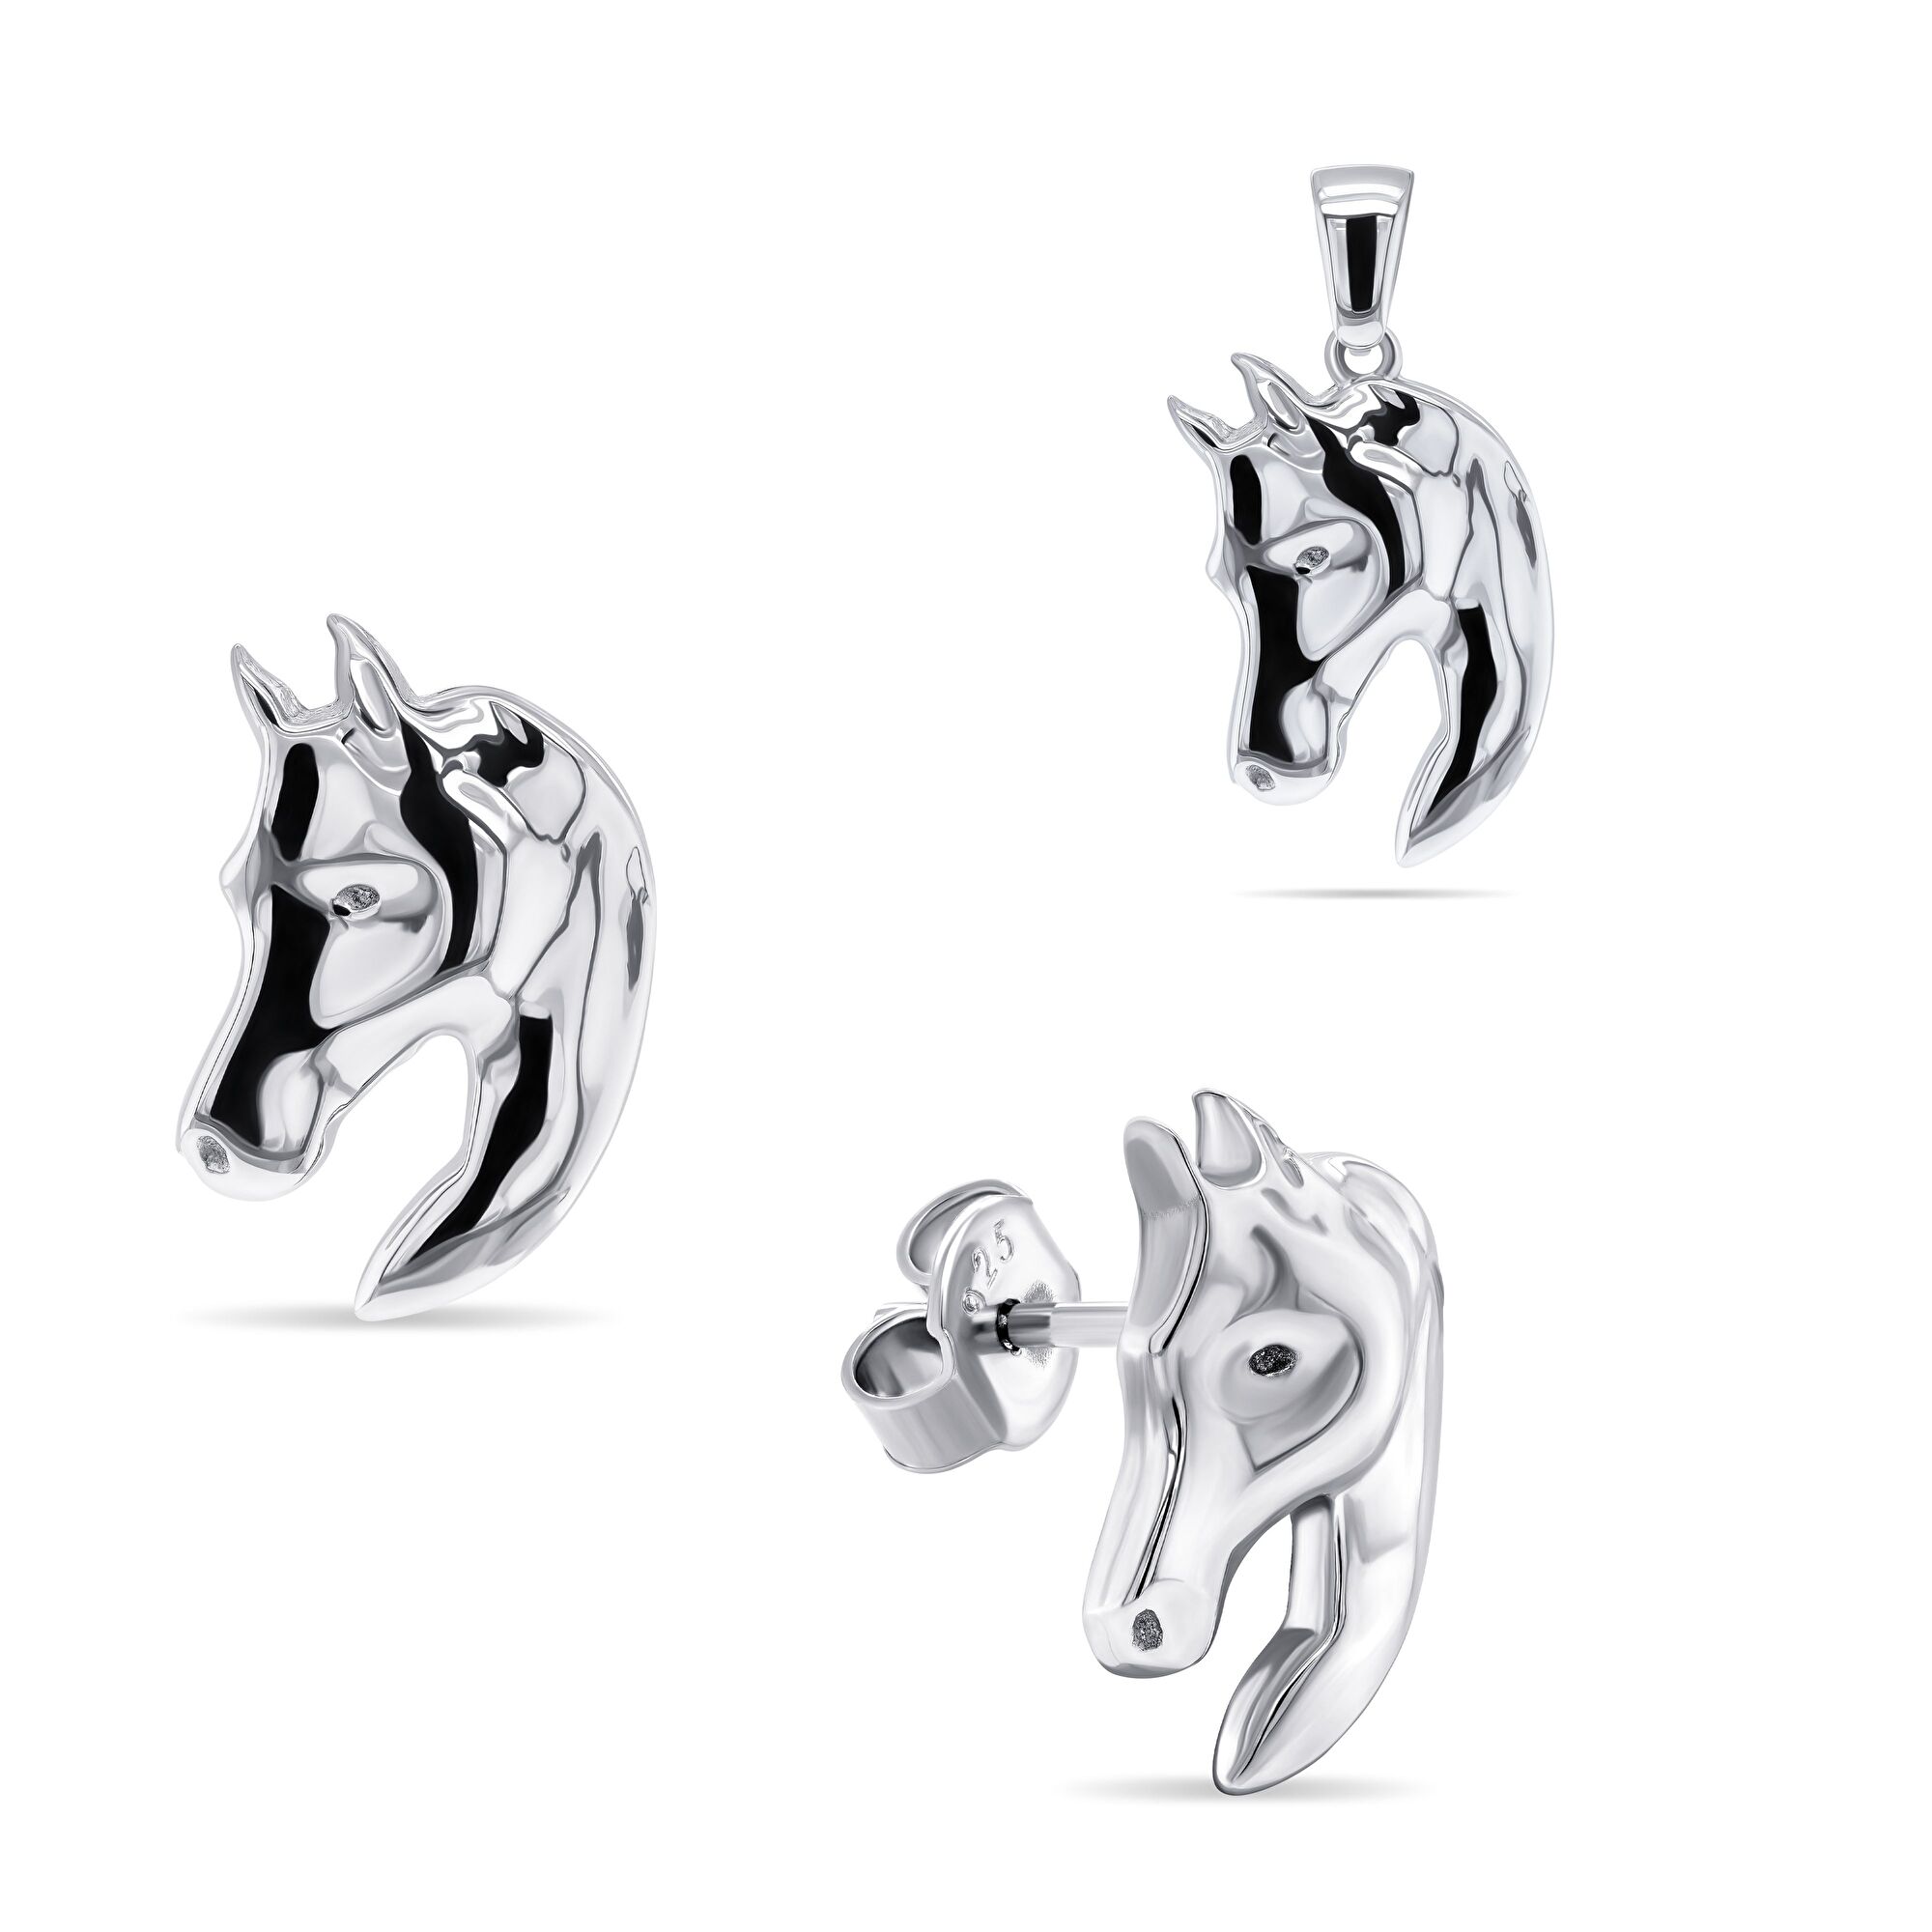 Brilio Silver -  Designový stříbrný set šperků Kůň SET209W (přívěsek, náušnice)